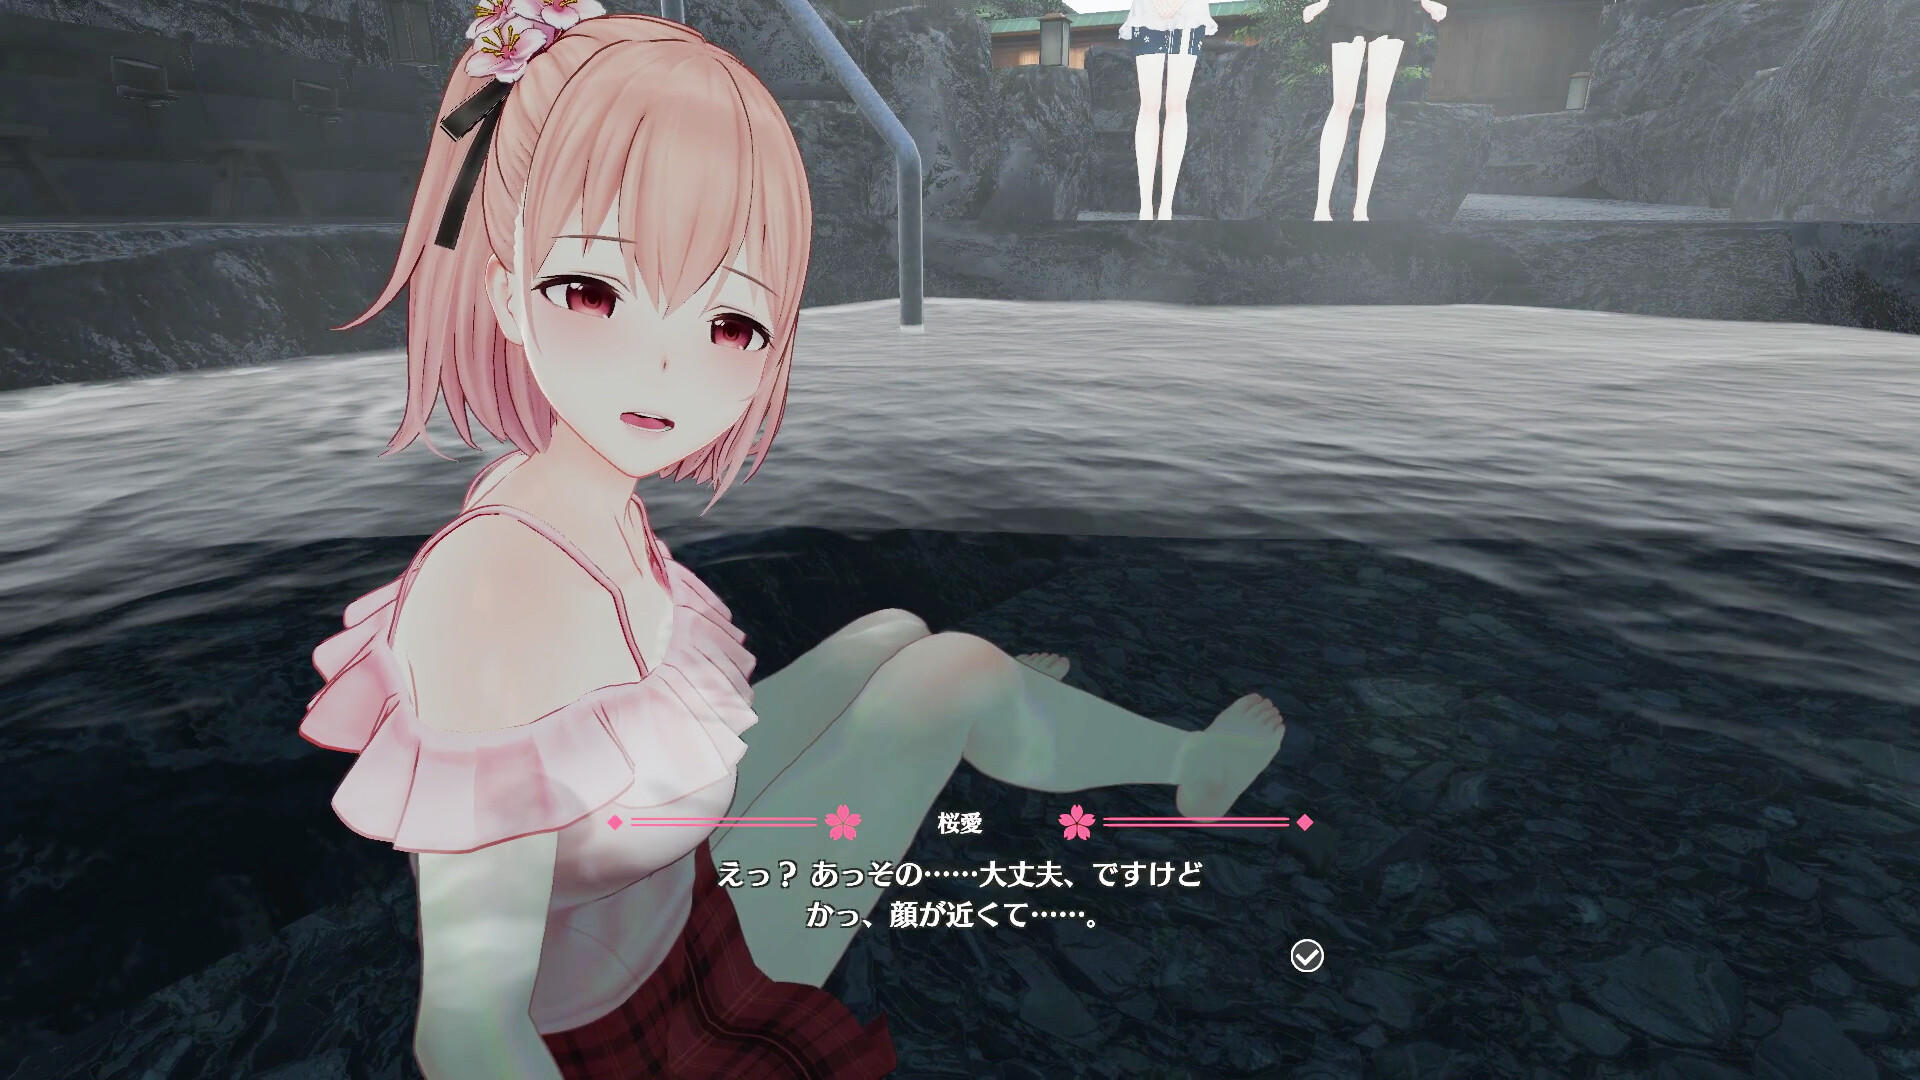 Koi-Koi: Love Blossoms Non-VR Edition screenshot game